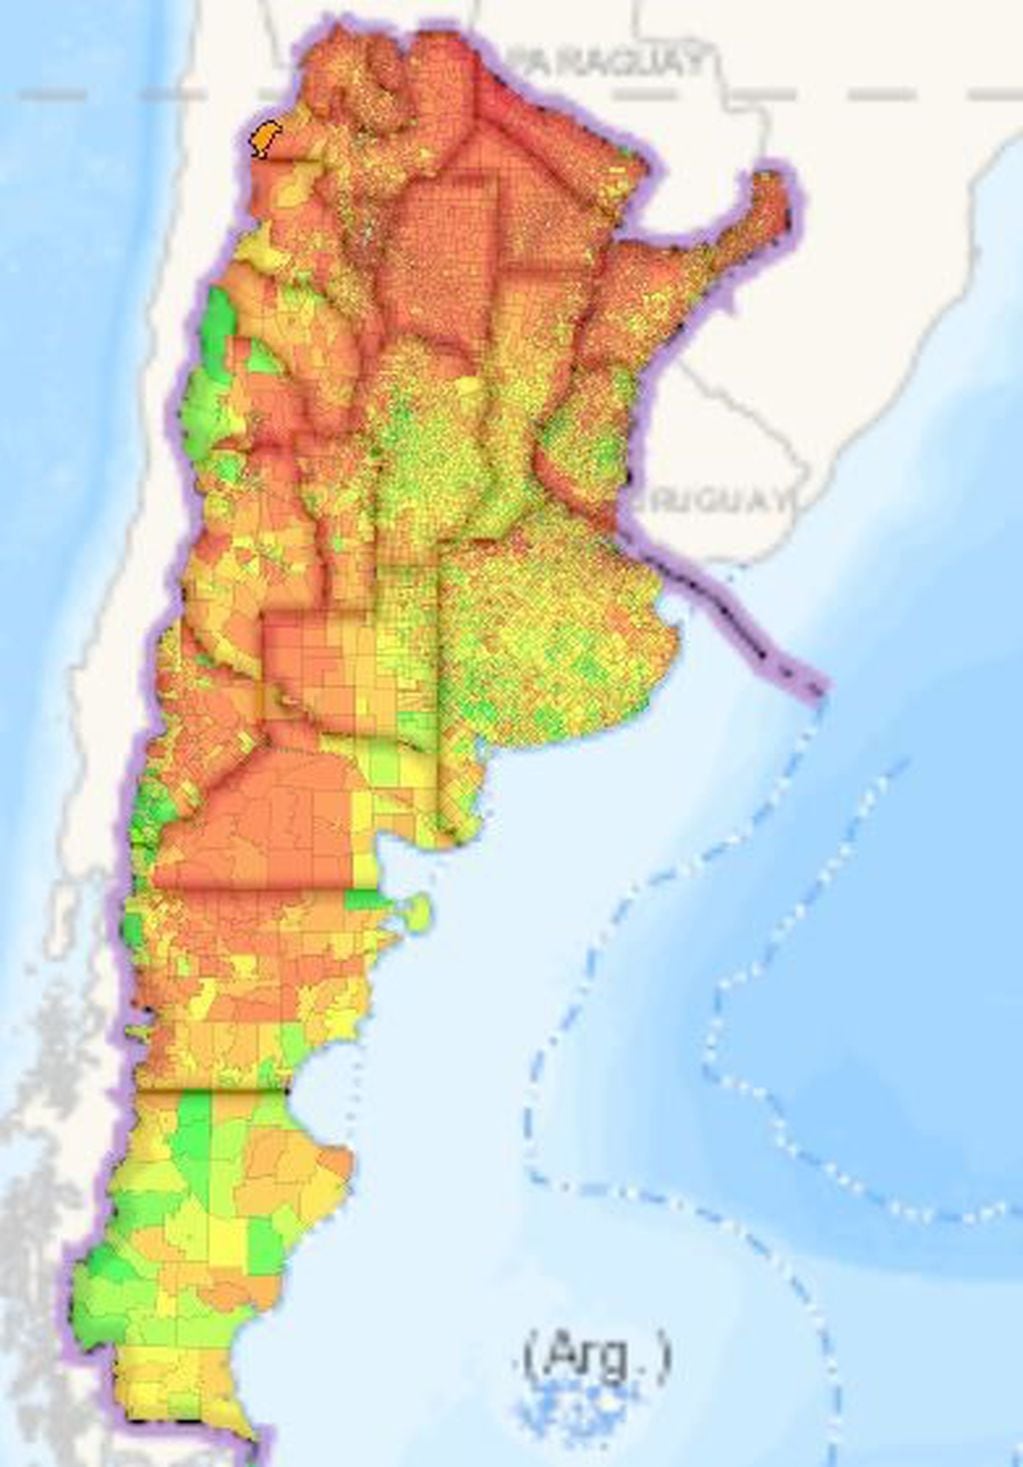 Mapa de ICV de Argentina, por distritos.
Ref: En verde mejor calidad de vida - En rojos la peor.